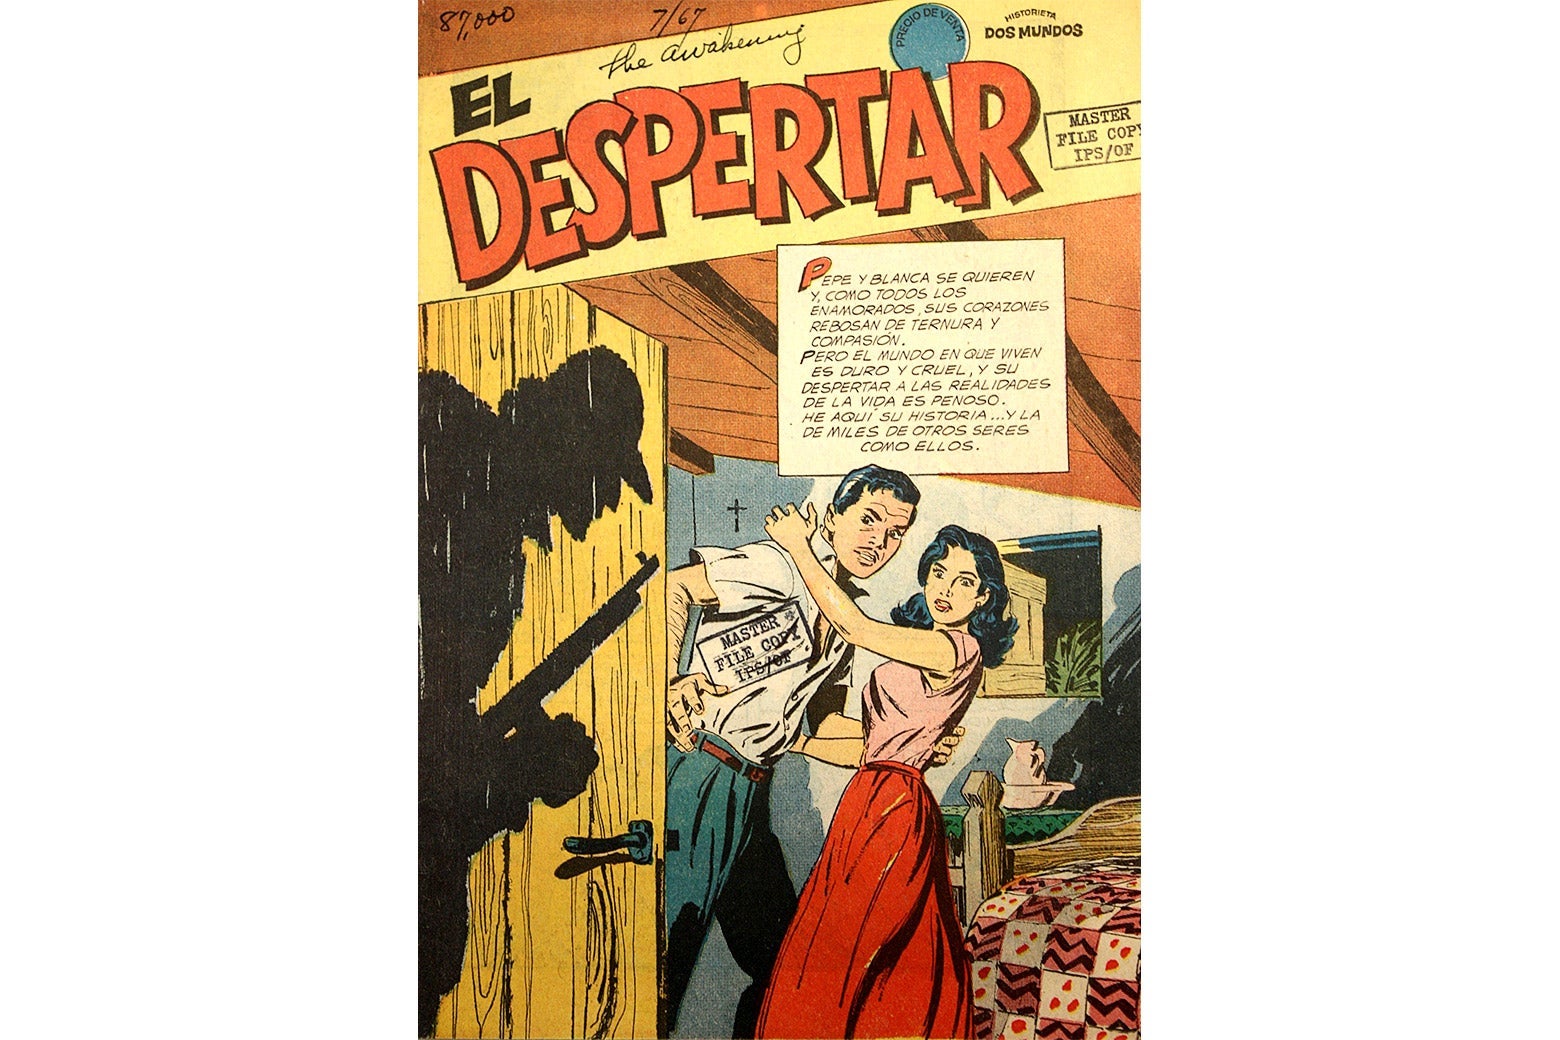 The cover of a comic called El Despertar.